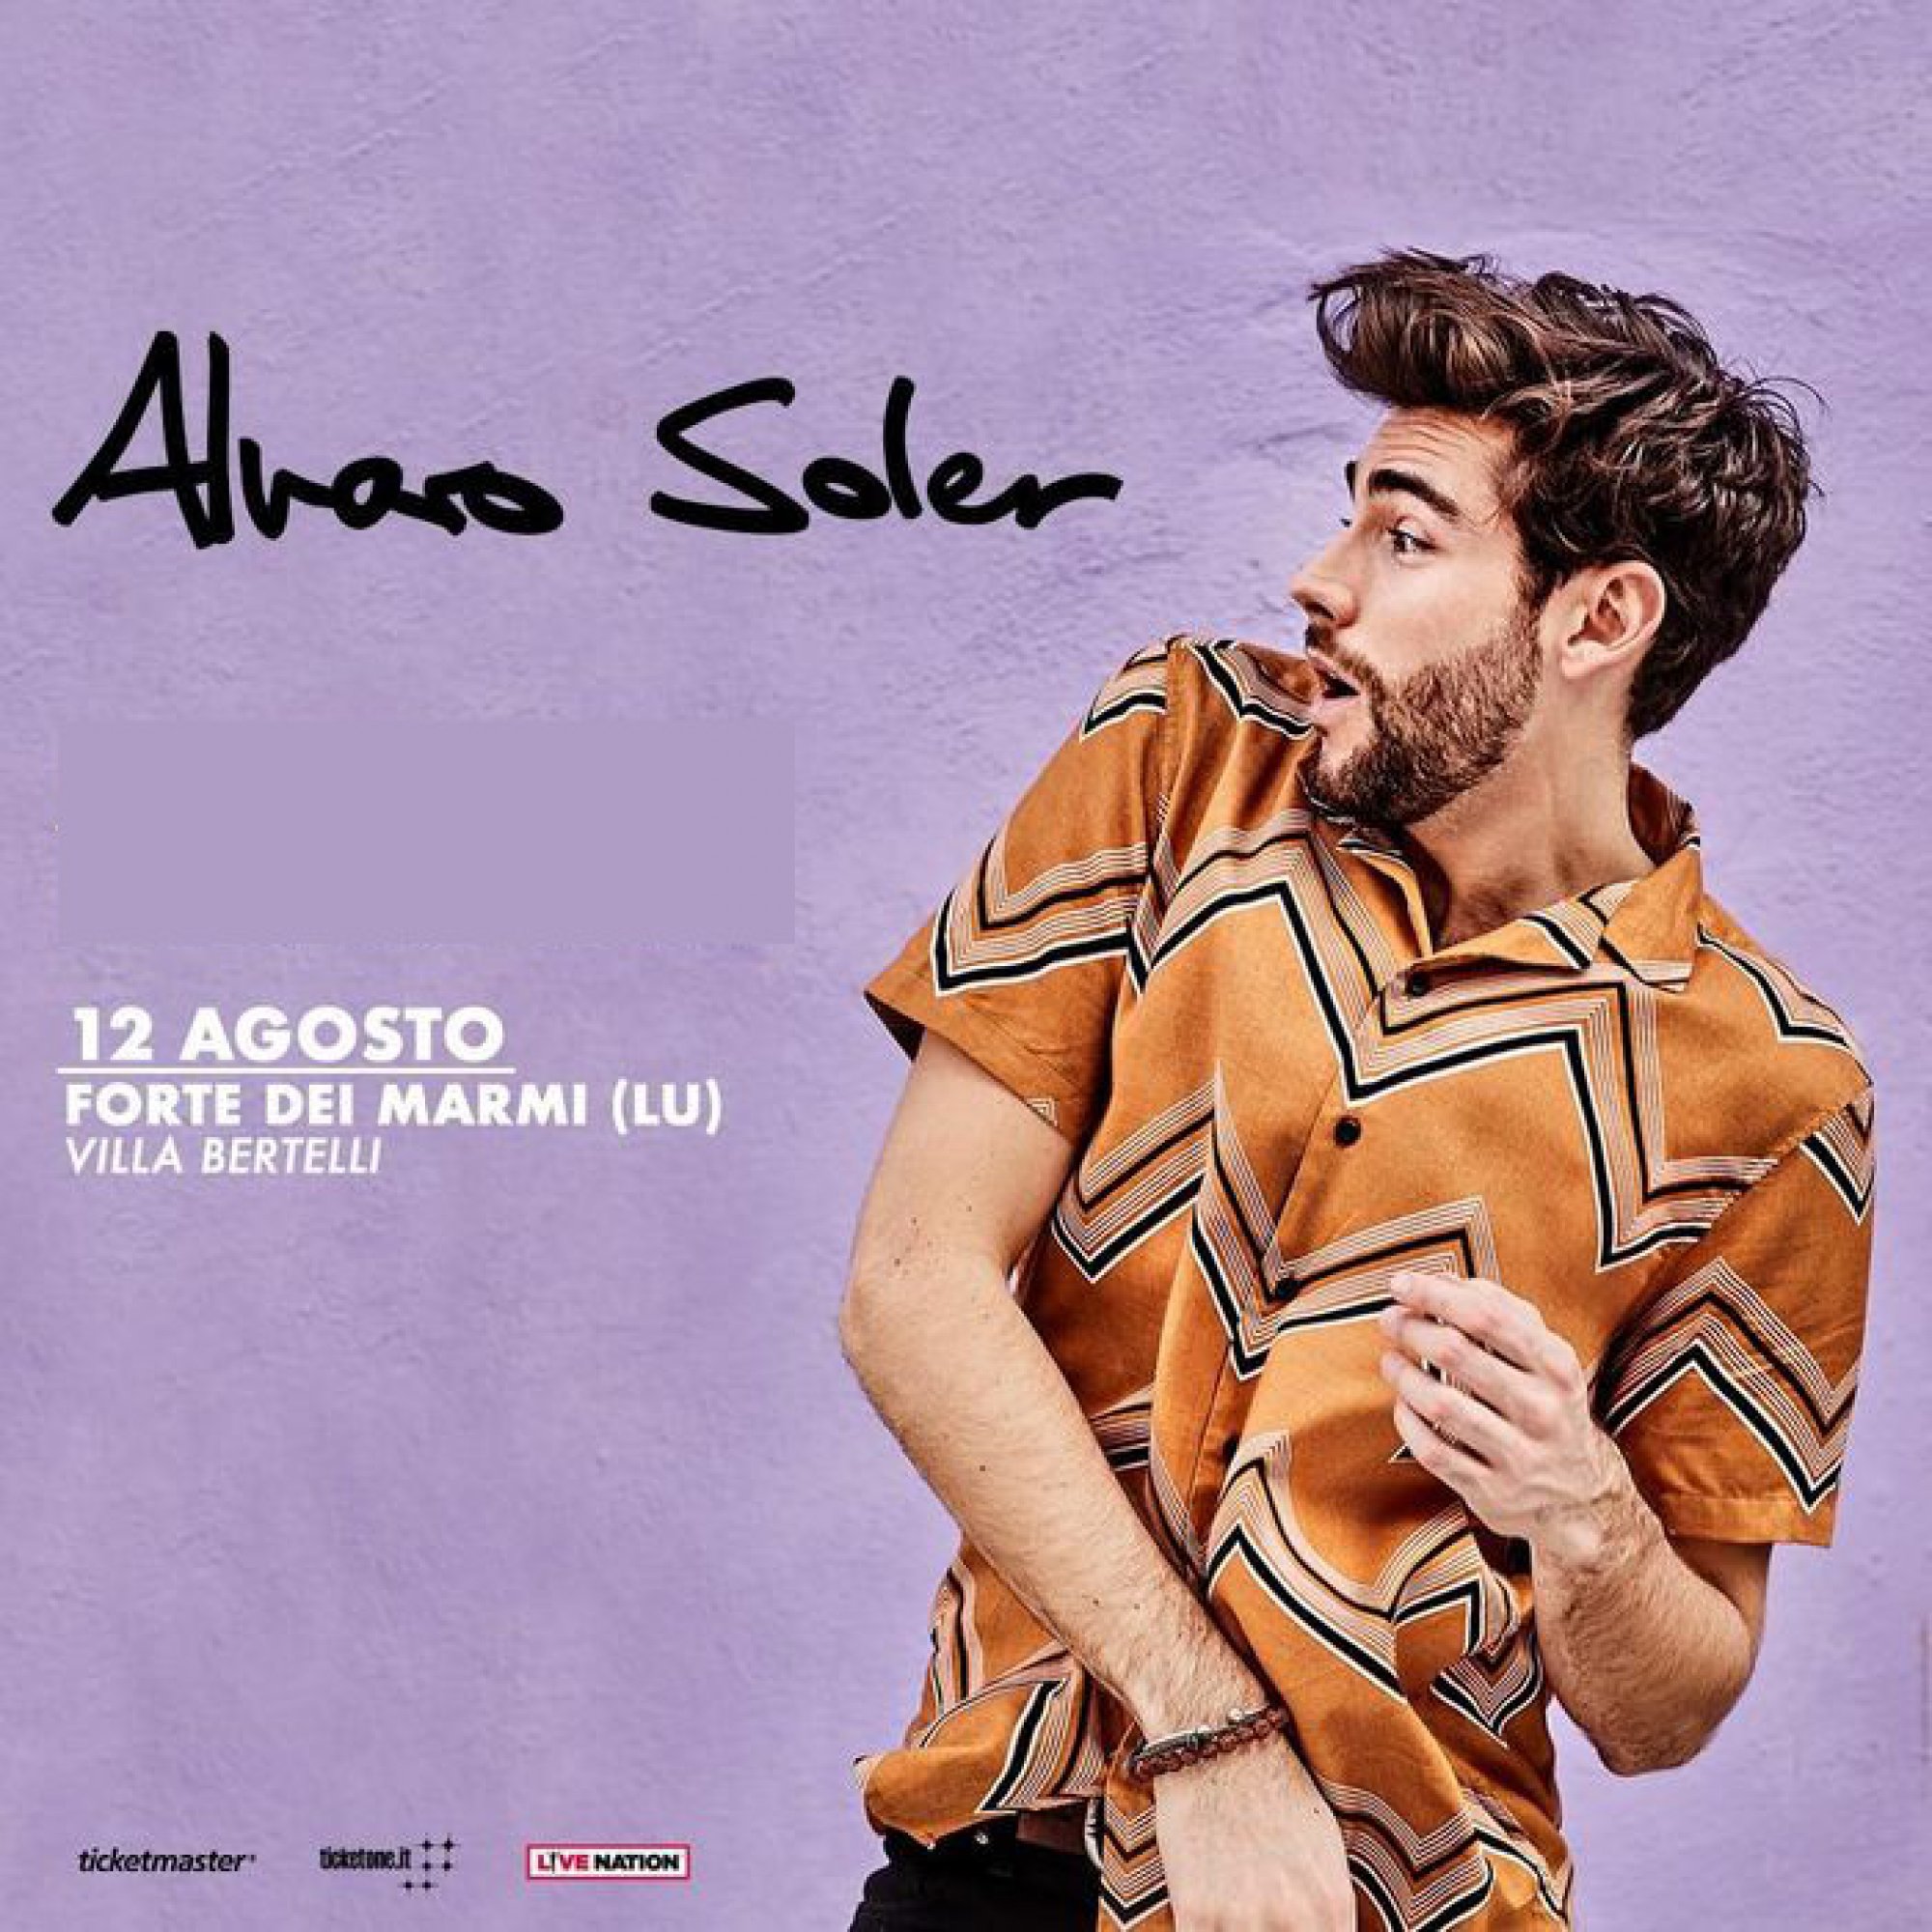 Alvaro Soler